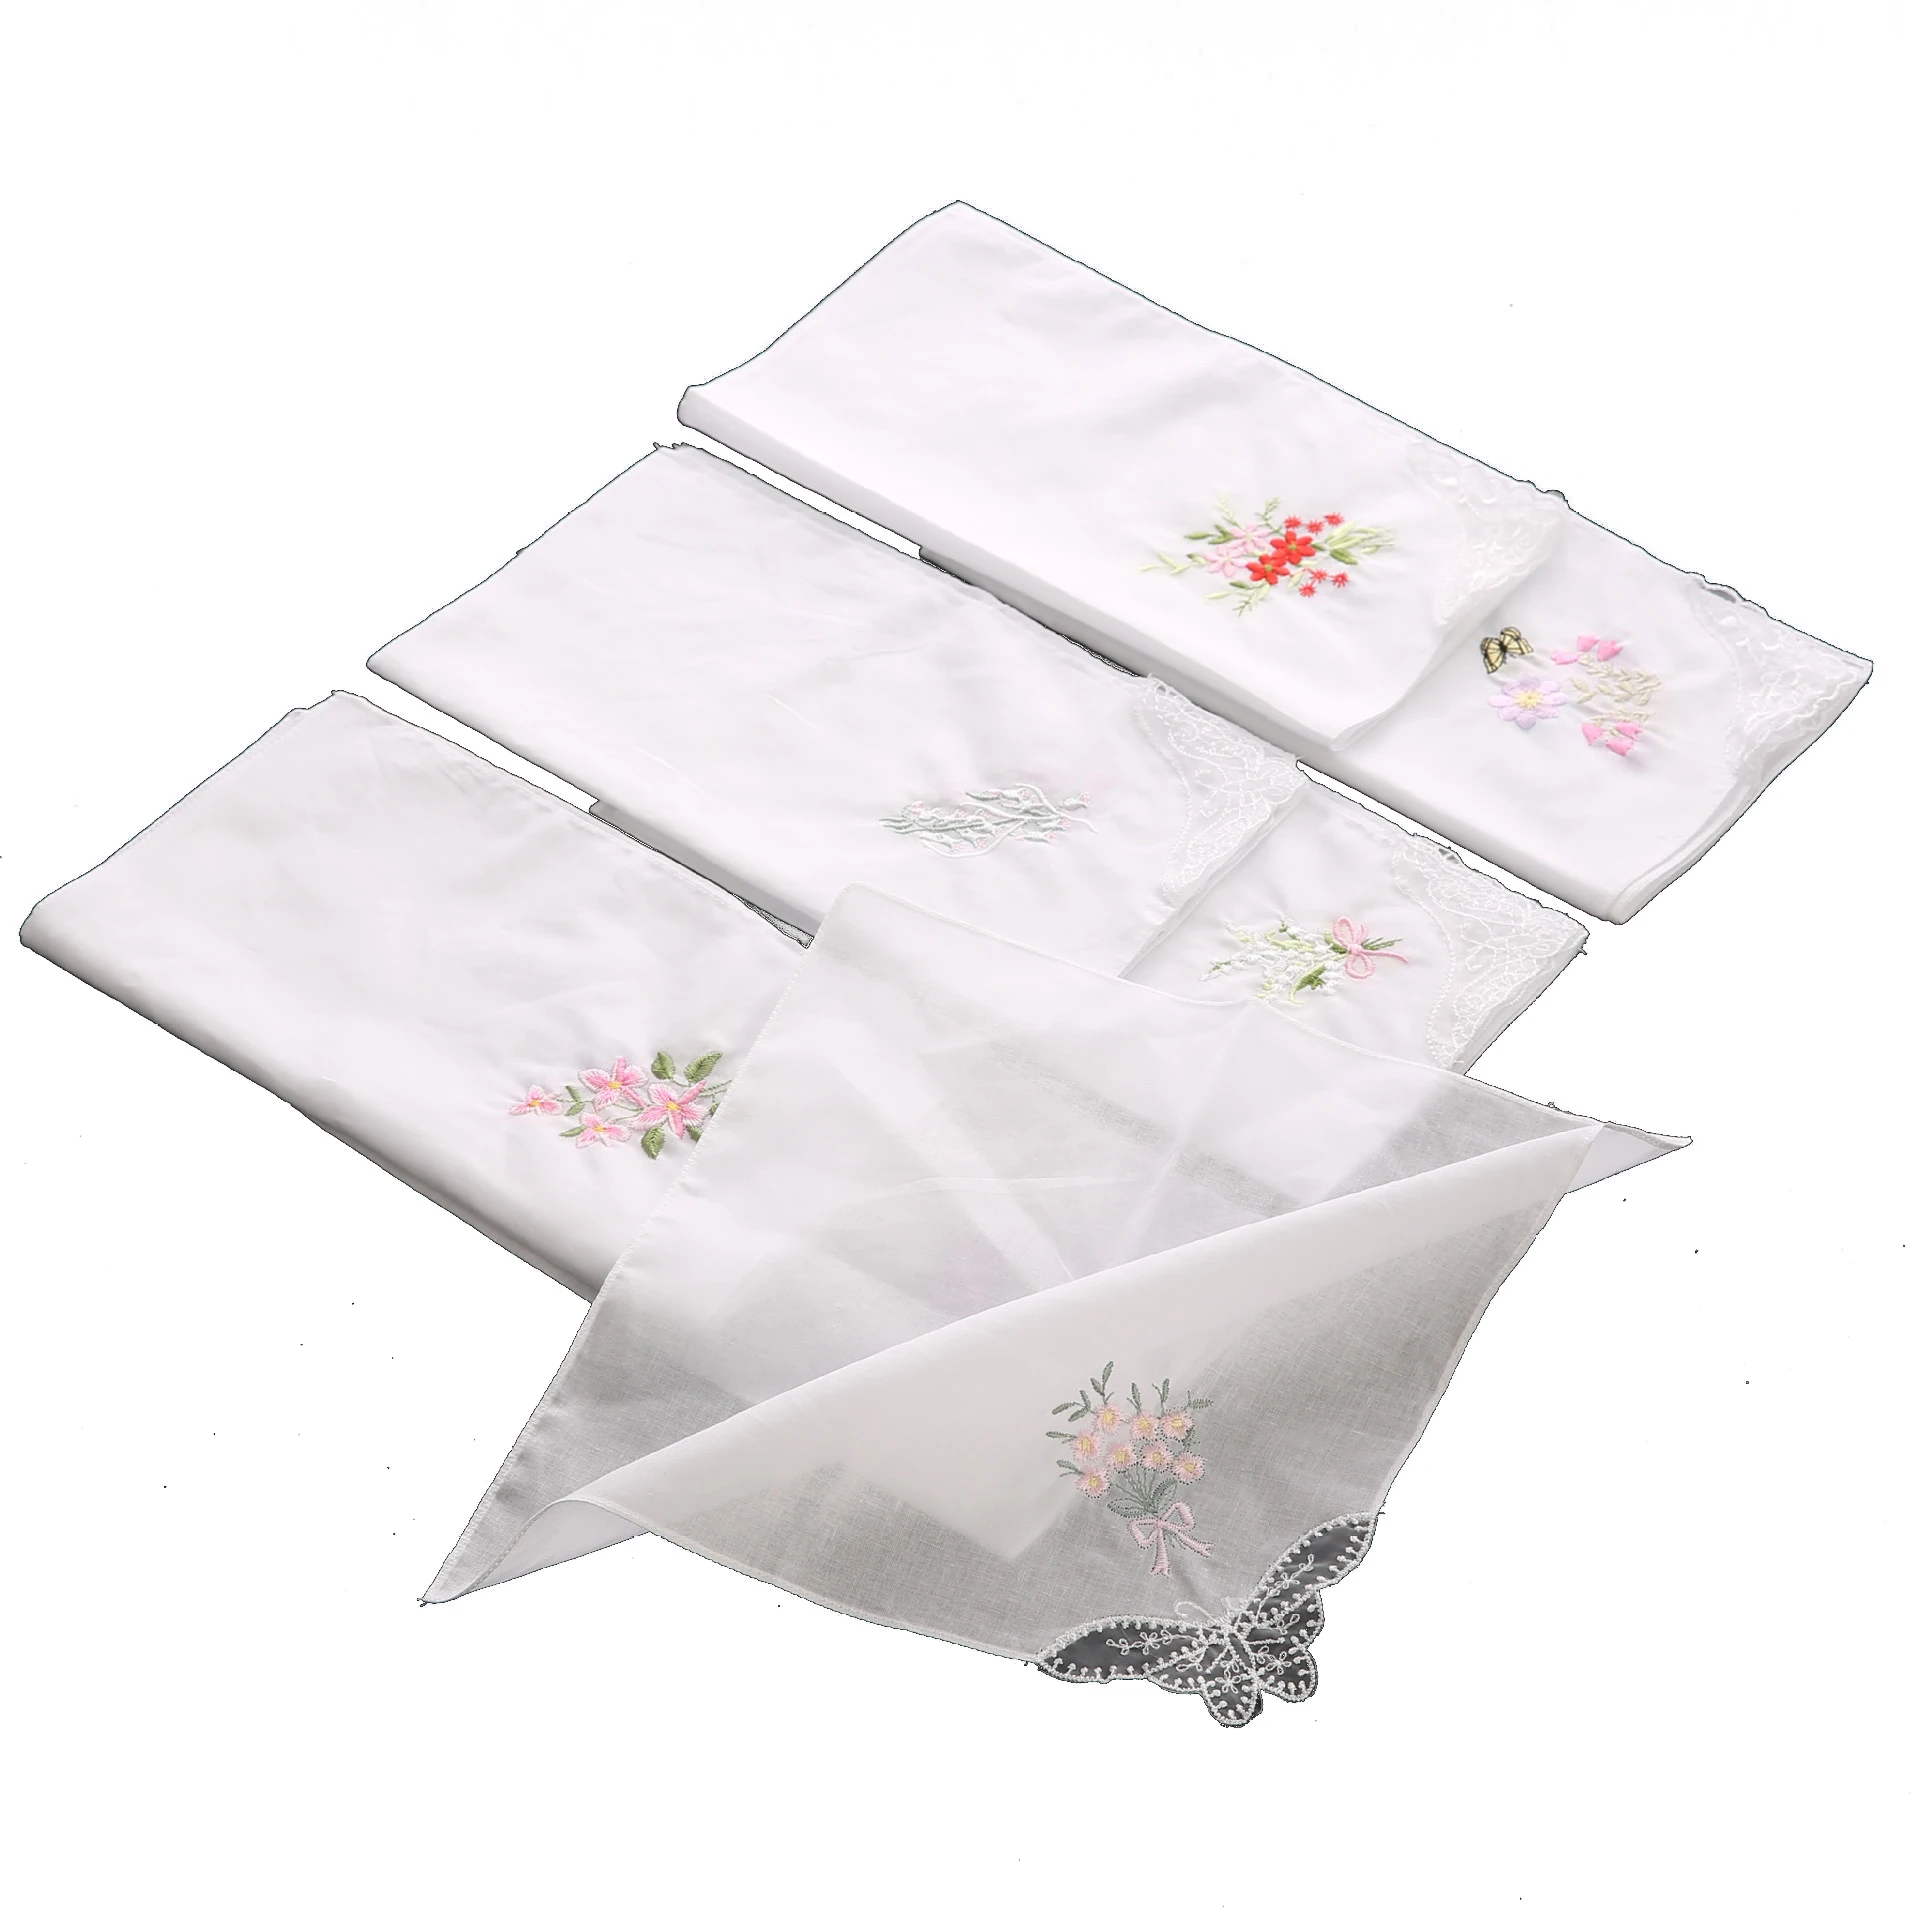 Lace embroidered cotton handkerchief high-grade pure cotton white handkerchief square towel